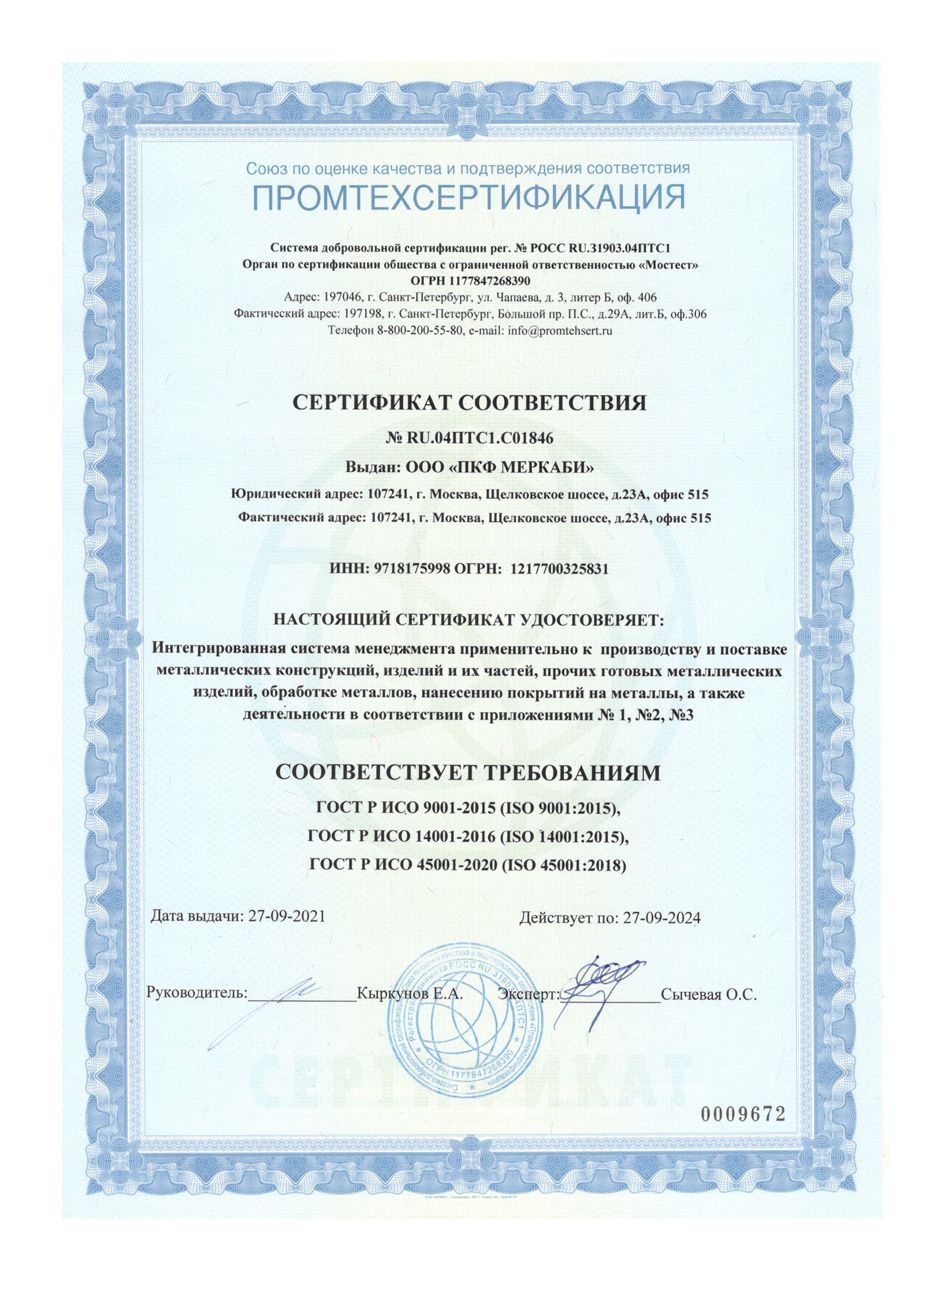 Сертификат соответствия № RU.04ПТС1.С01846 ISO 9001:2015